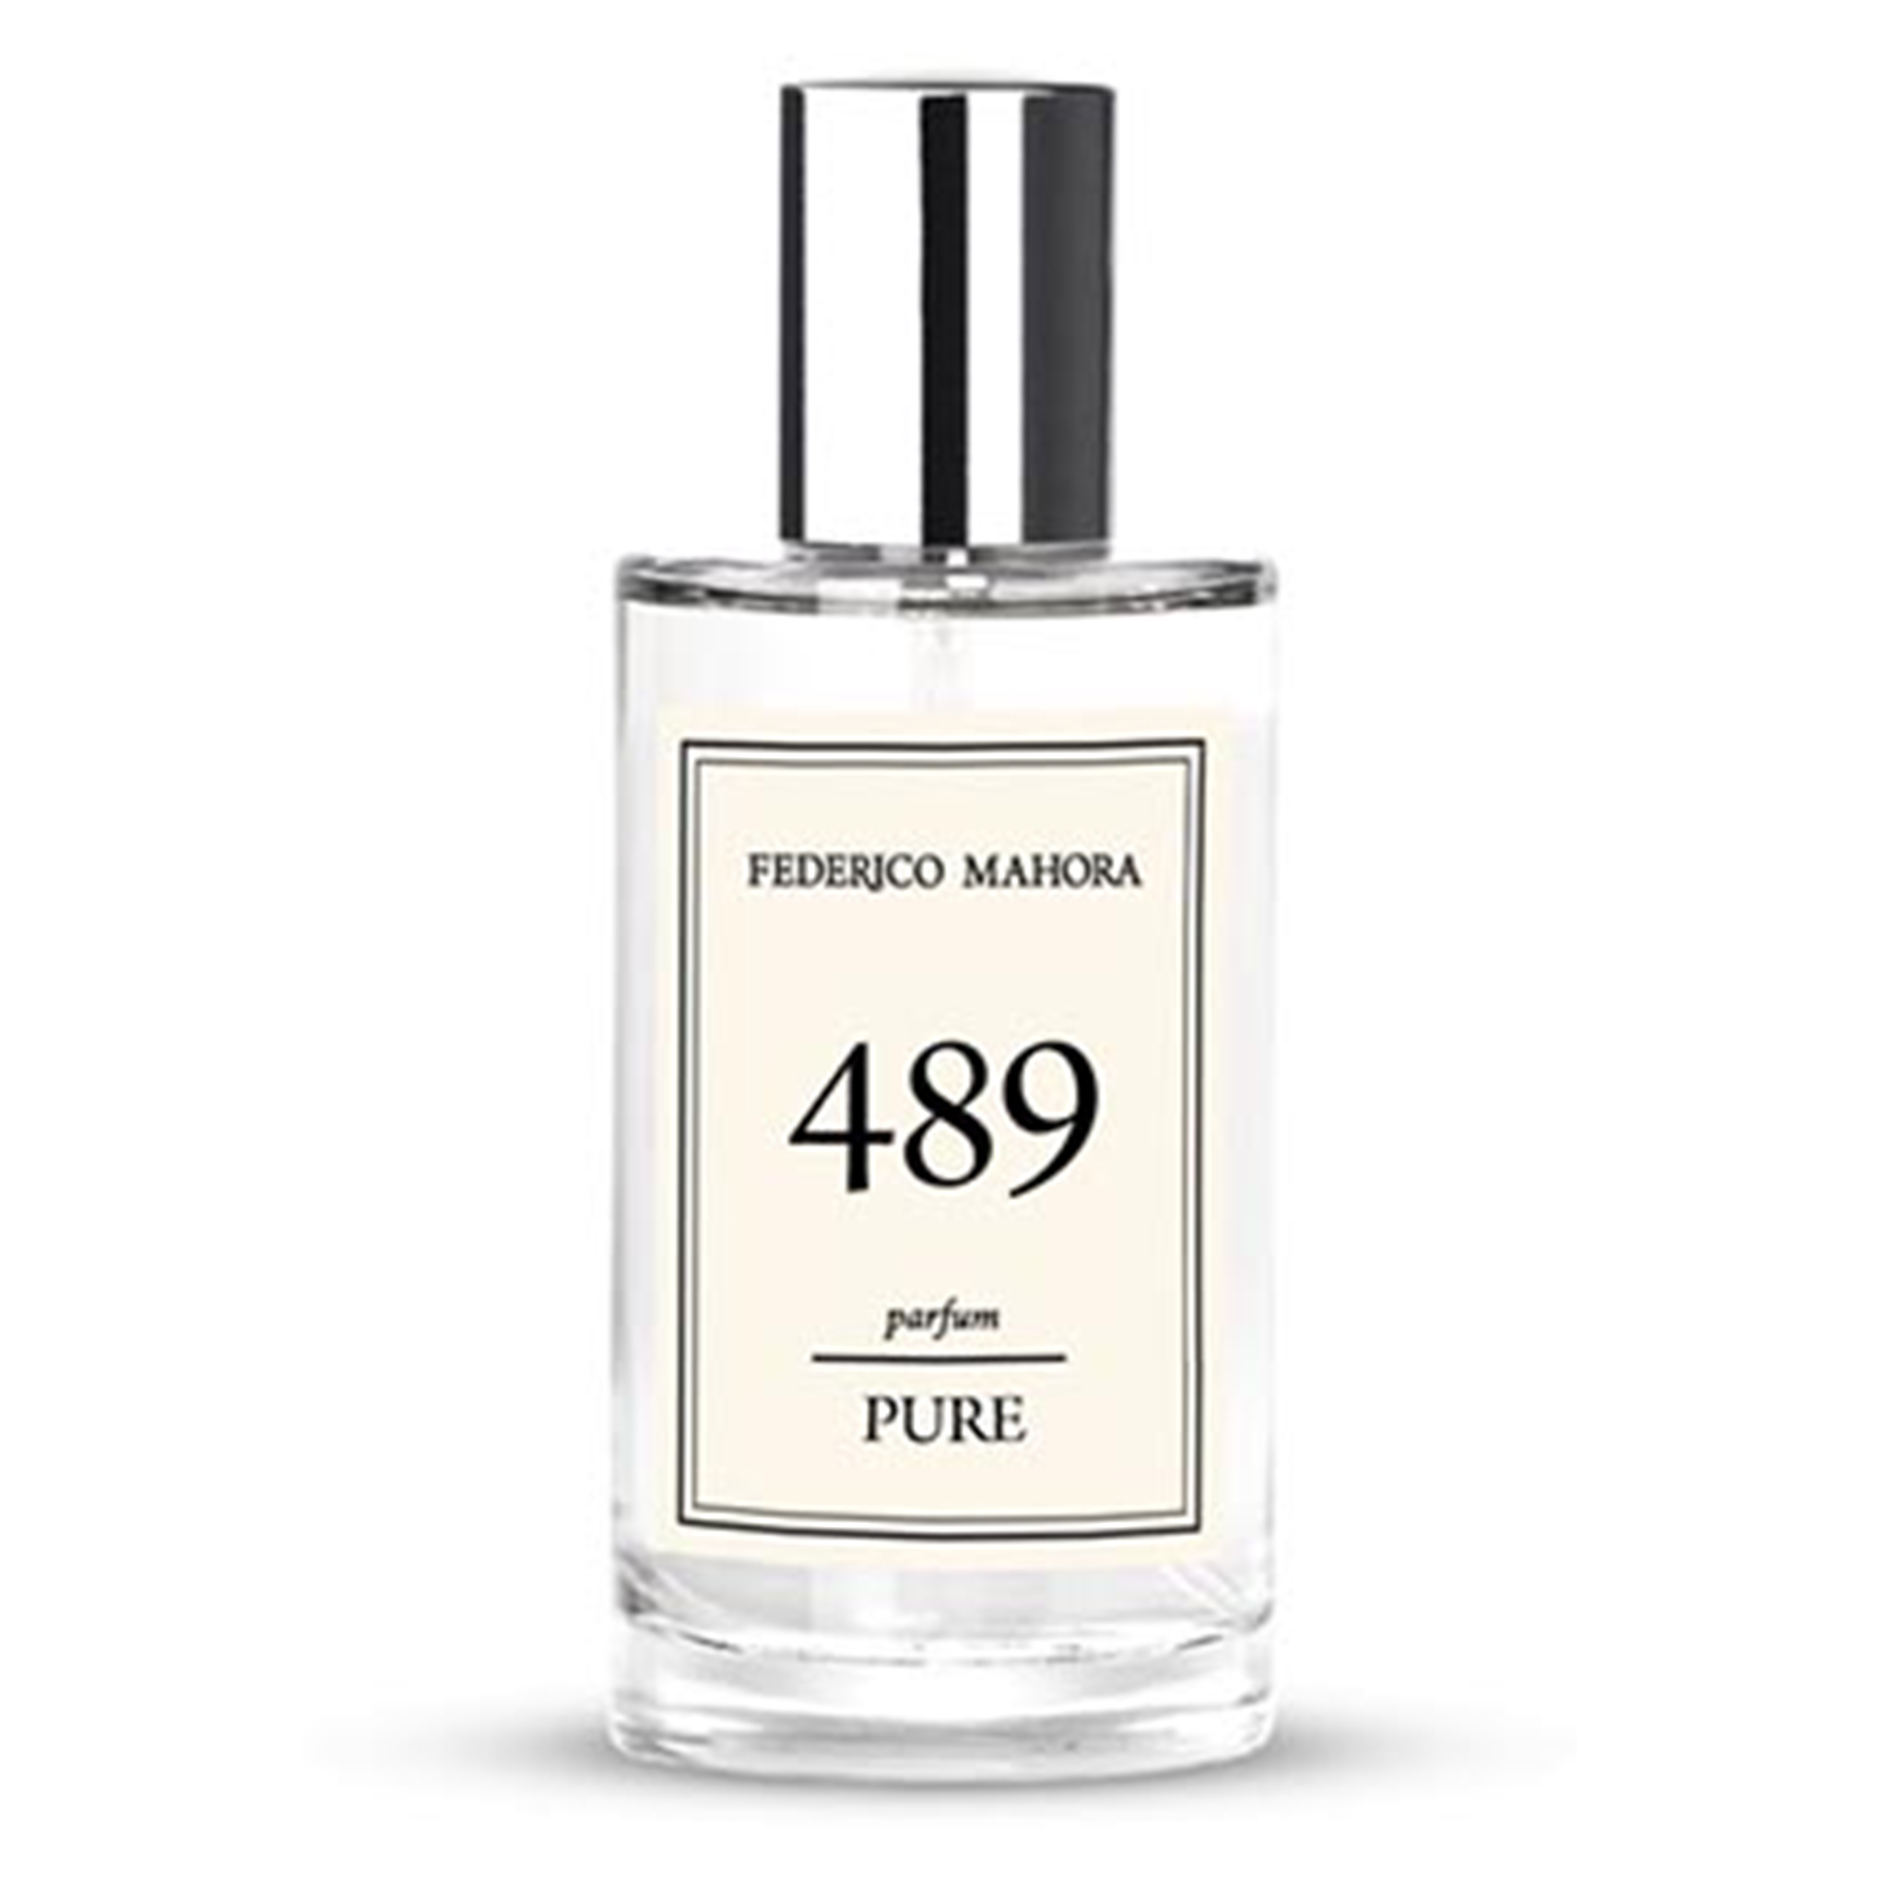 PURE 489 Parfum Federico Mahora